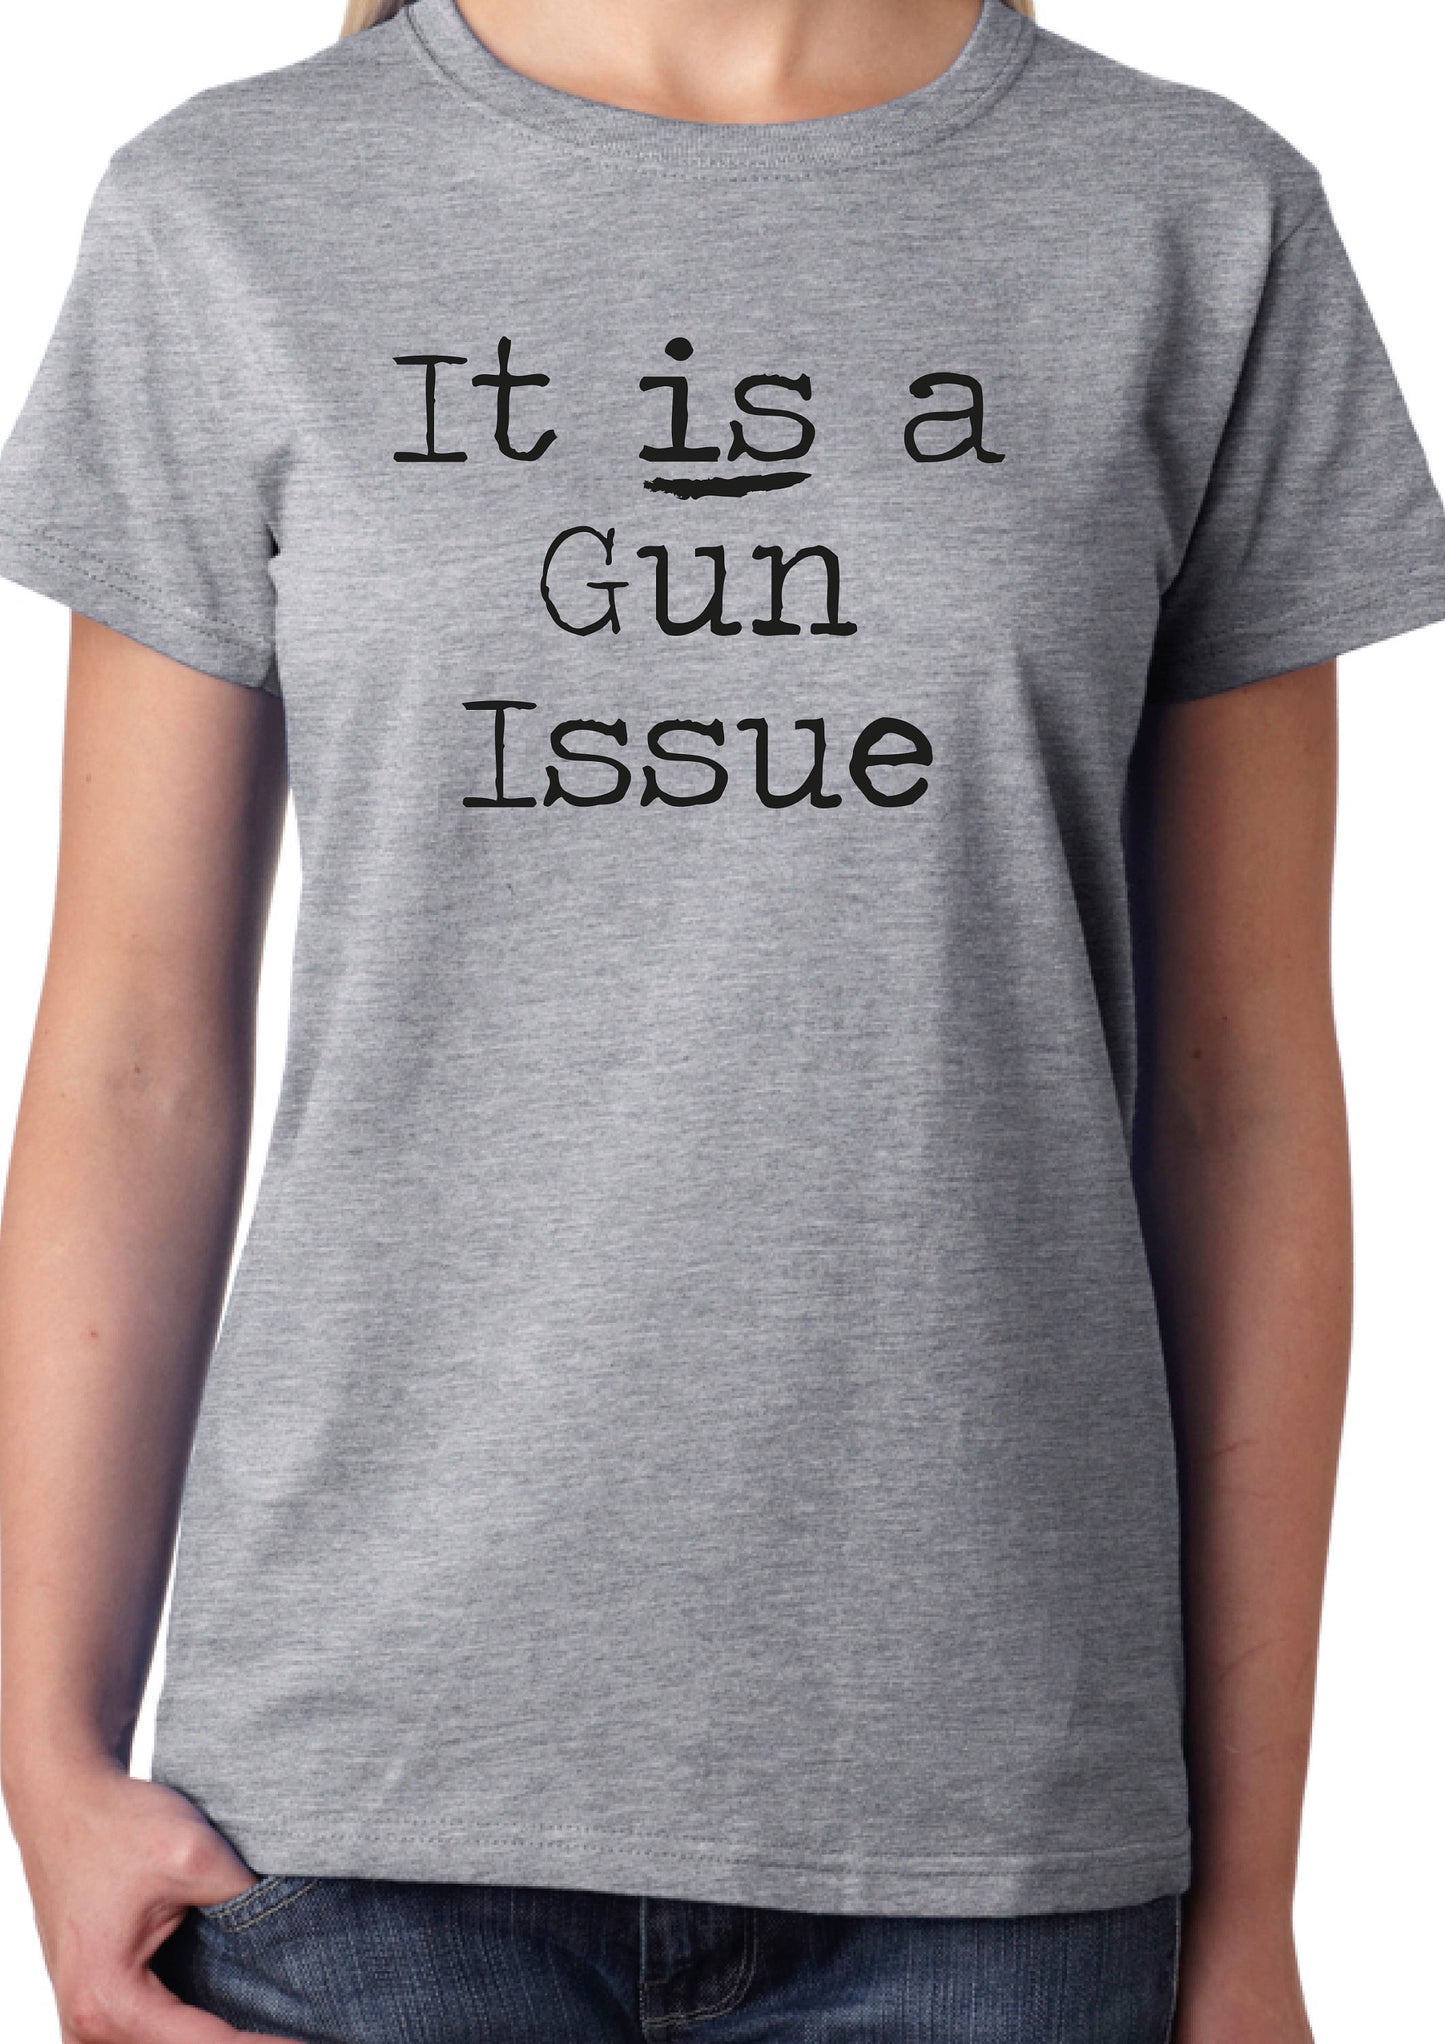 It IS a Gun Issue T-Shirt, Slogan Statement Tee Ladies or Unisex